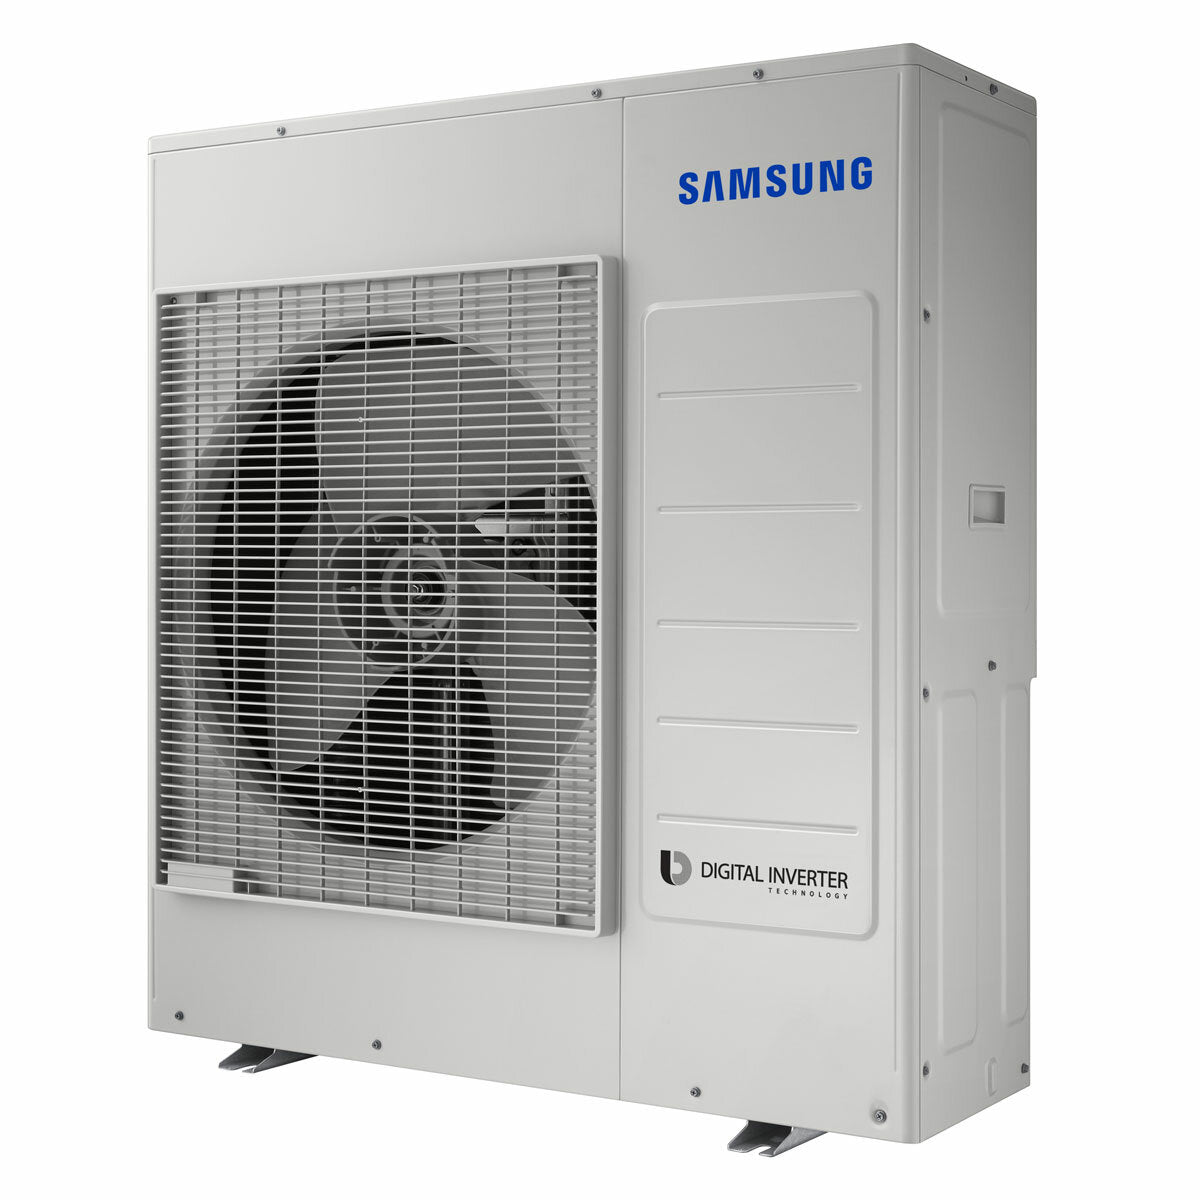 Samsung Cebu WLAN Klimaanlage Penta Split 9000 + 9000 + 9000 + 9000 + 18000 BTU Wechselrichter A++ WLAN Außengerät 10,0 kW